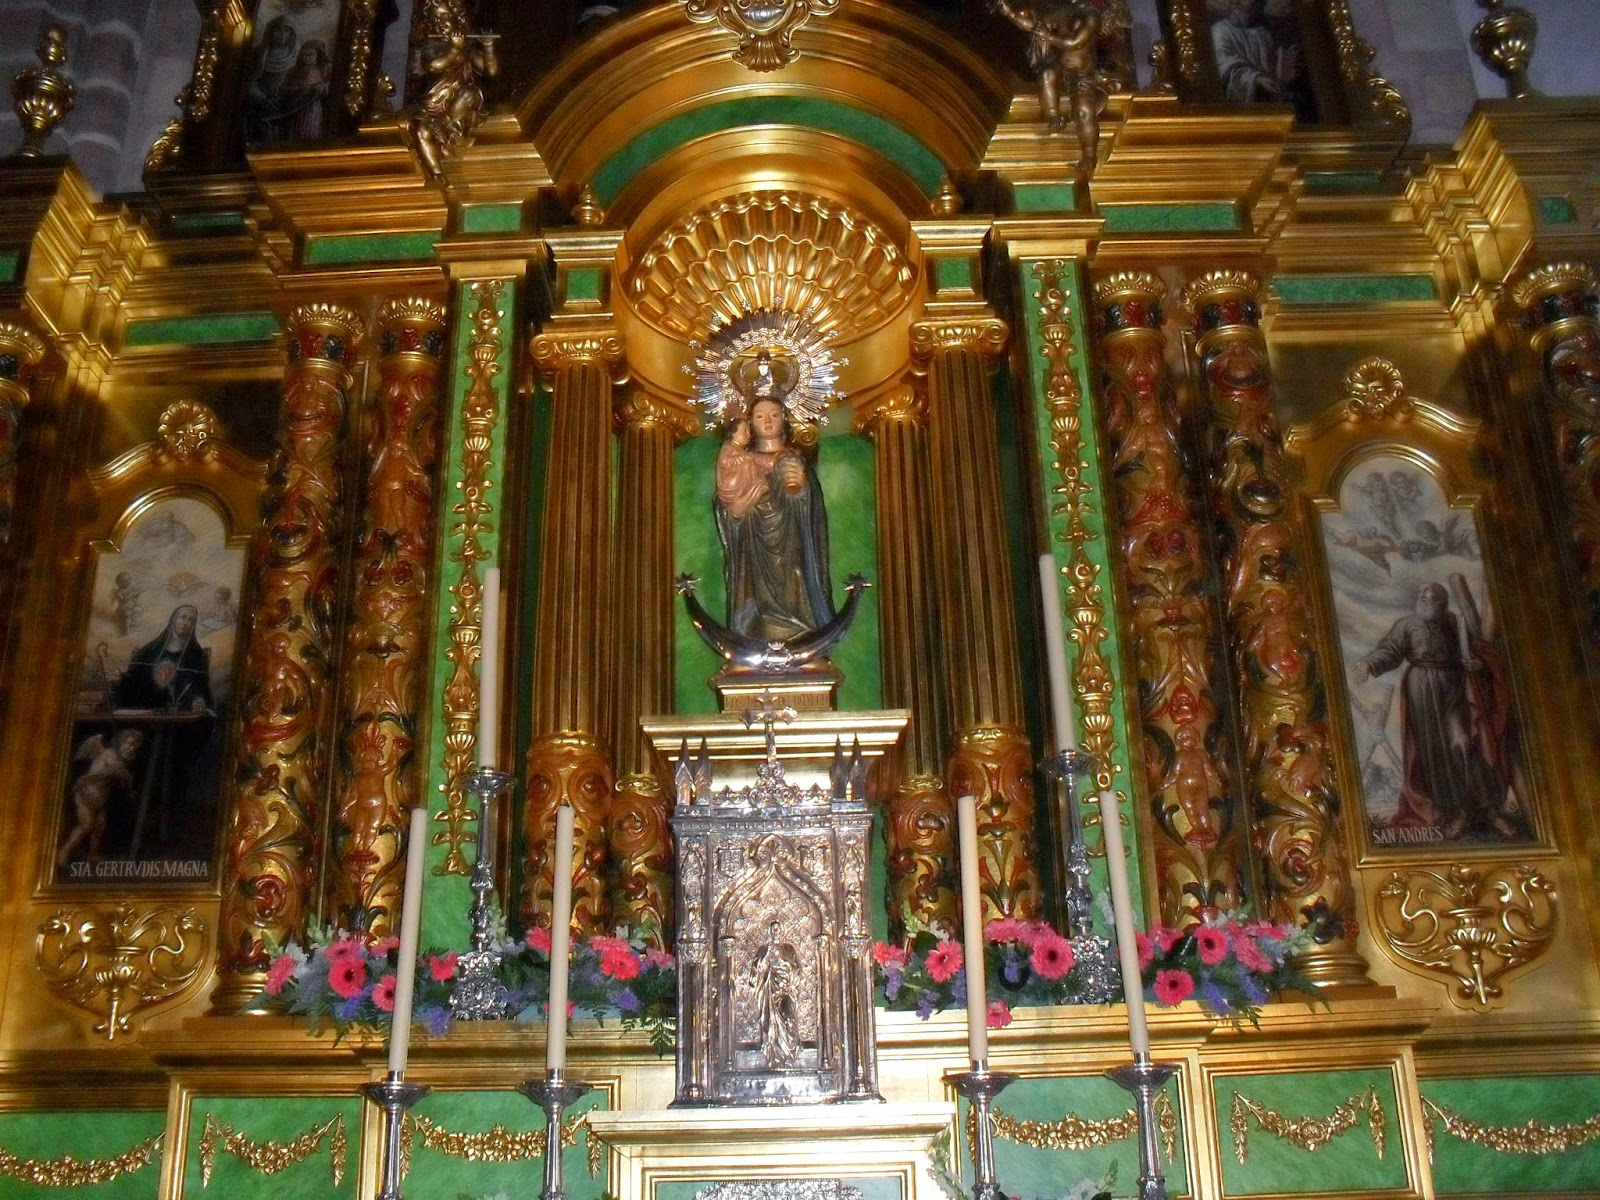 Nuestra Señora de Zocueca, una Virgen de Castilla en Andalucía, España (20 jul, 5 ago, últ dgo sep)